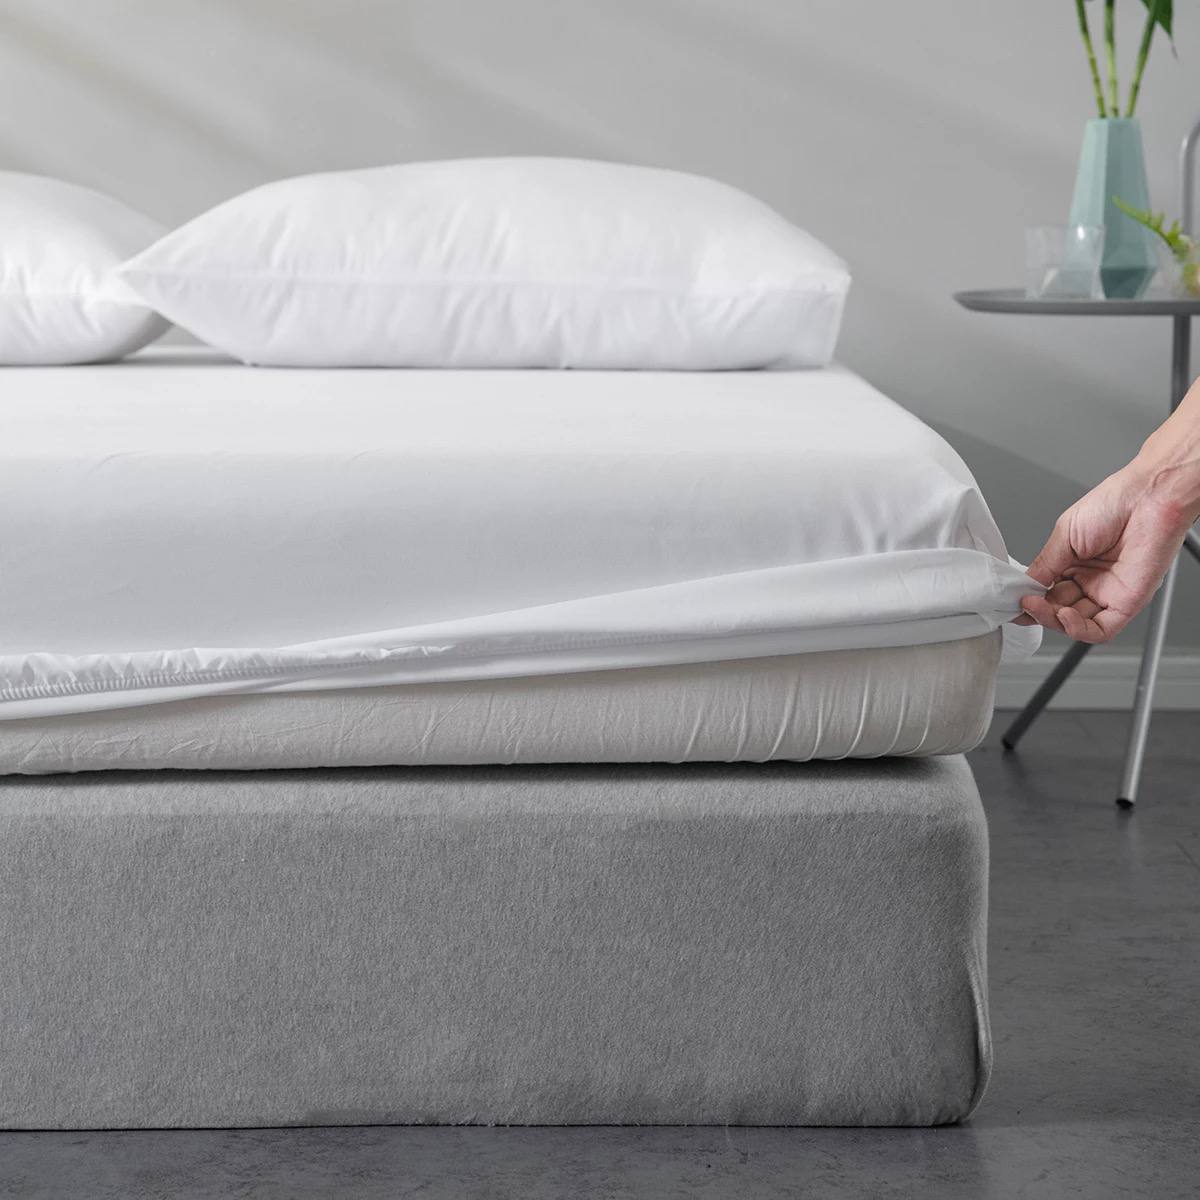 Hochwertiges Spannbetttuch aus 100% Baumwolle mit 300 Fäden – Perfekte Passform für erholsamen Schlaf! In den Größen 180 x 200 cm und 140 x 200 cm